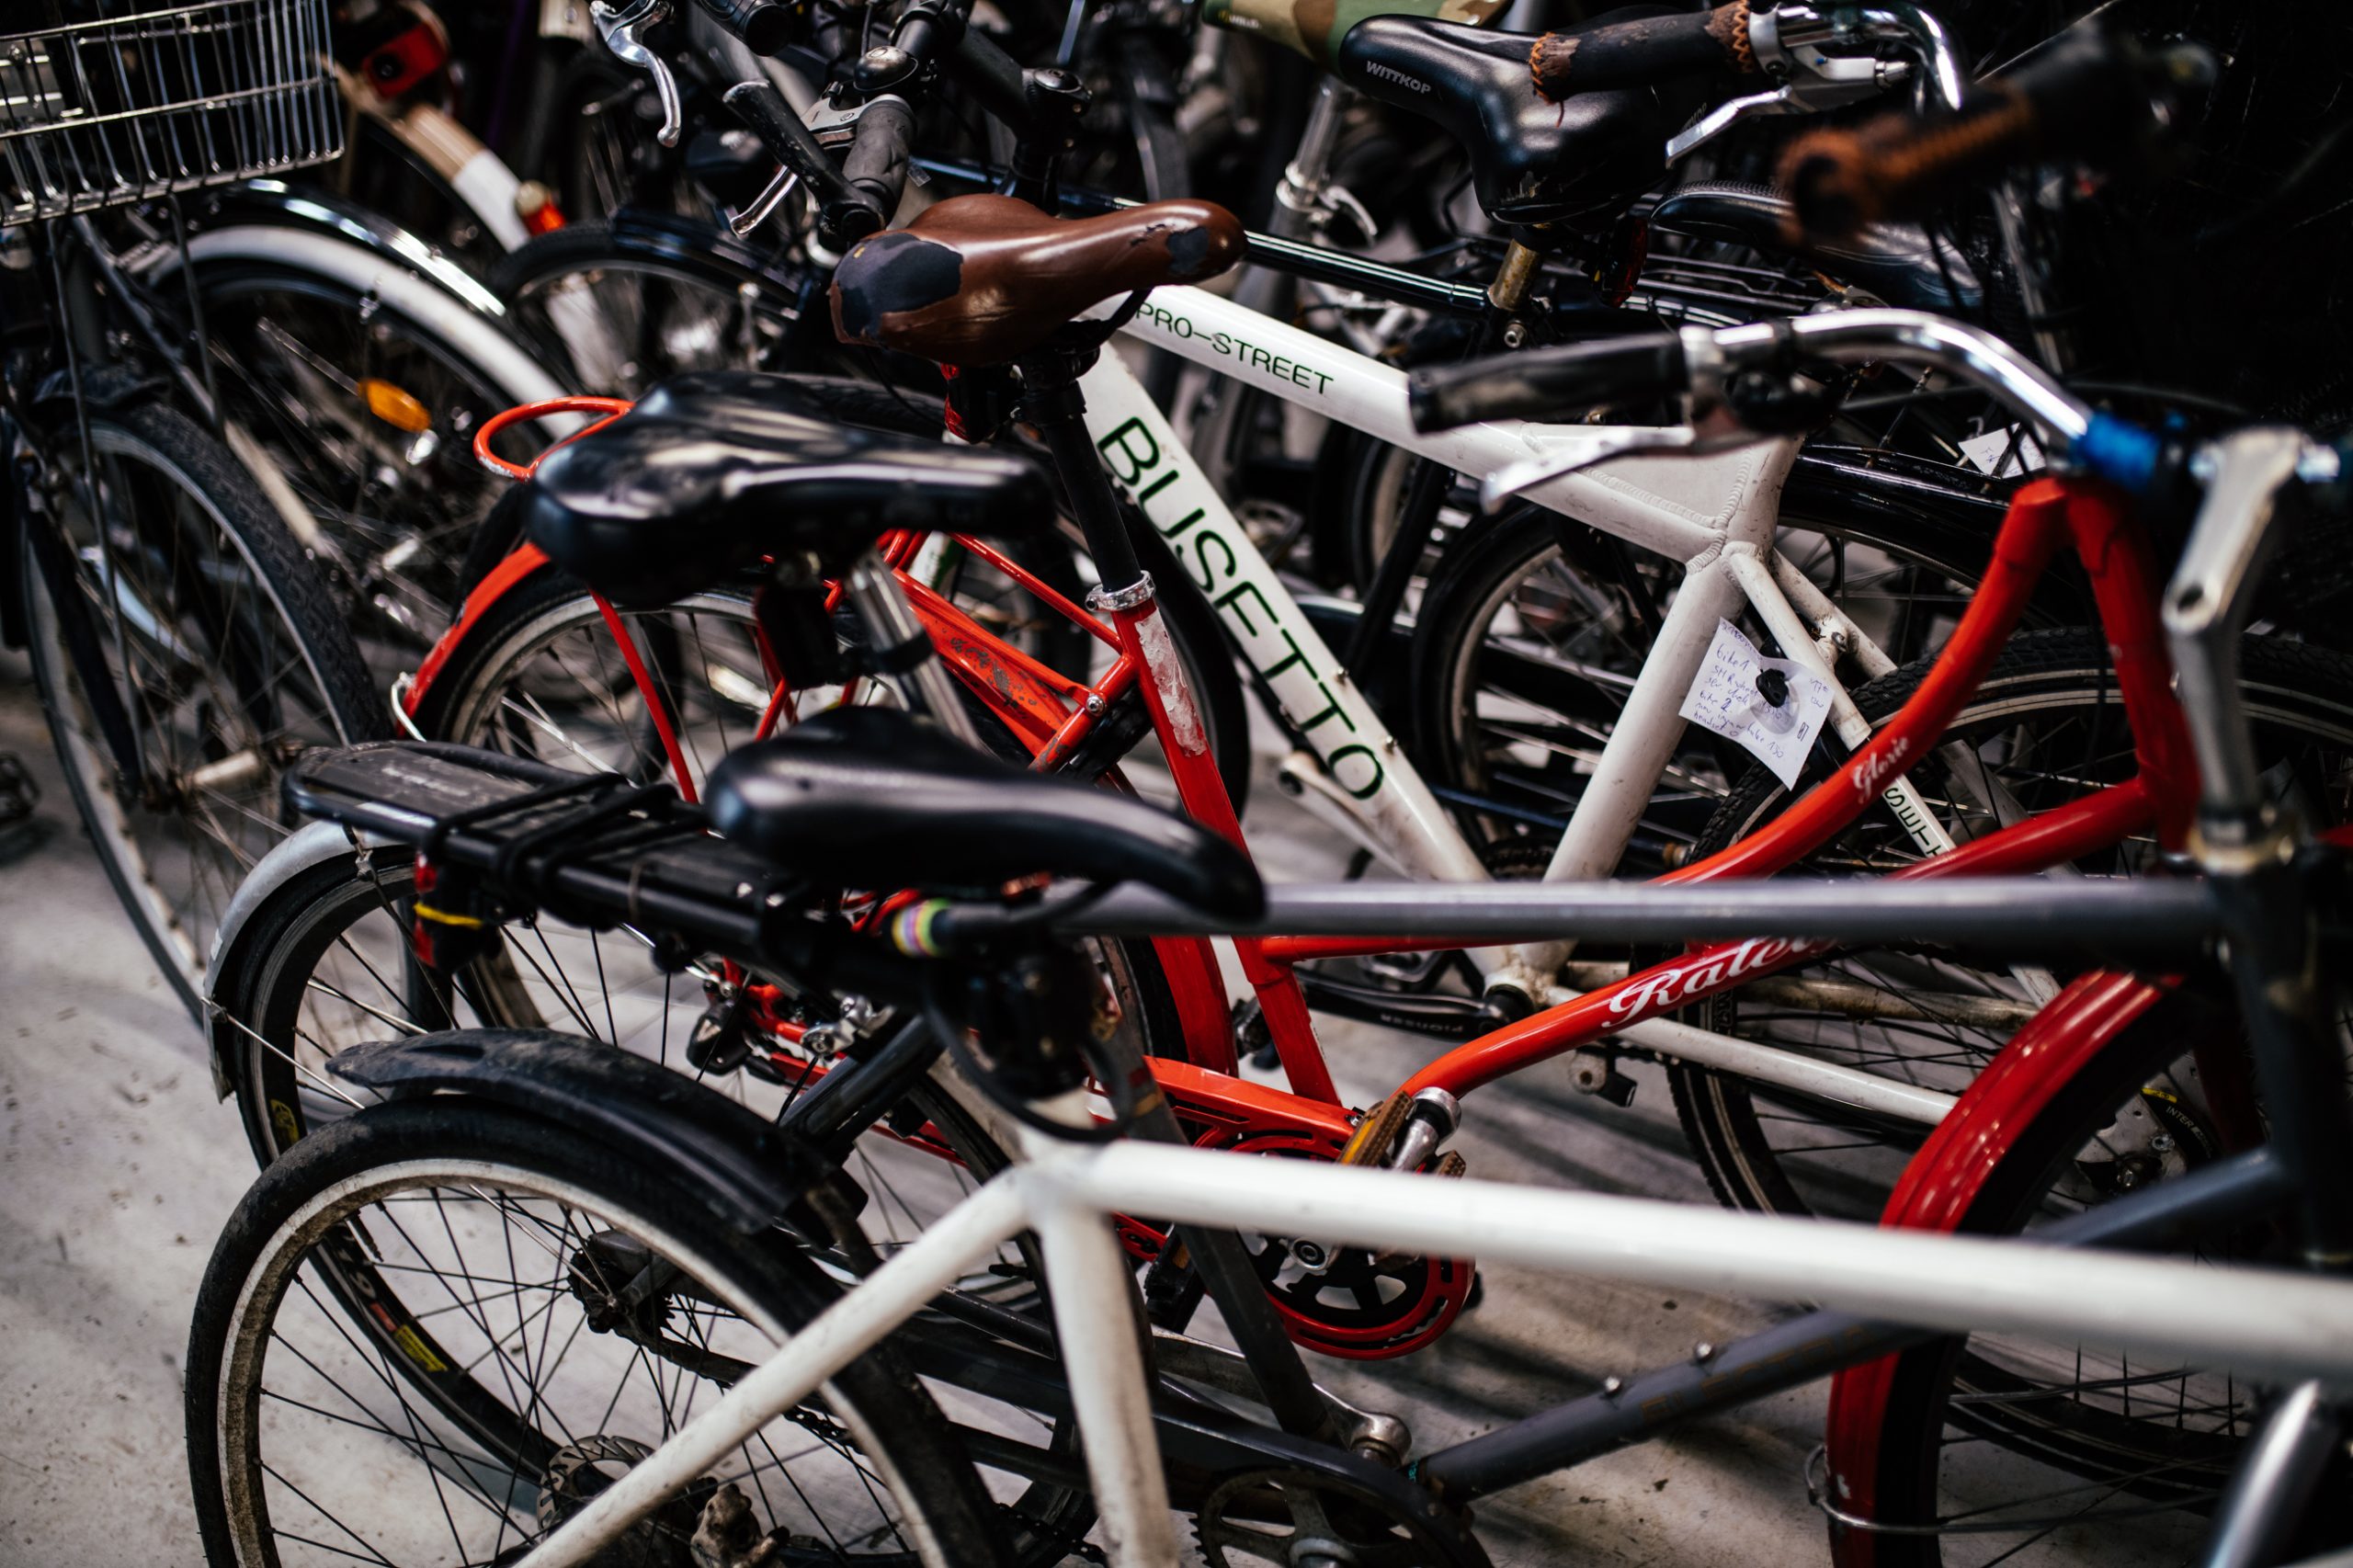 Hælde Hvem Glatte KGS HAVE CYKLER | Cykeludlejning i København – stort udvalg til fair priser